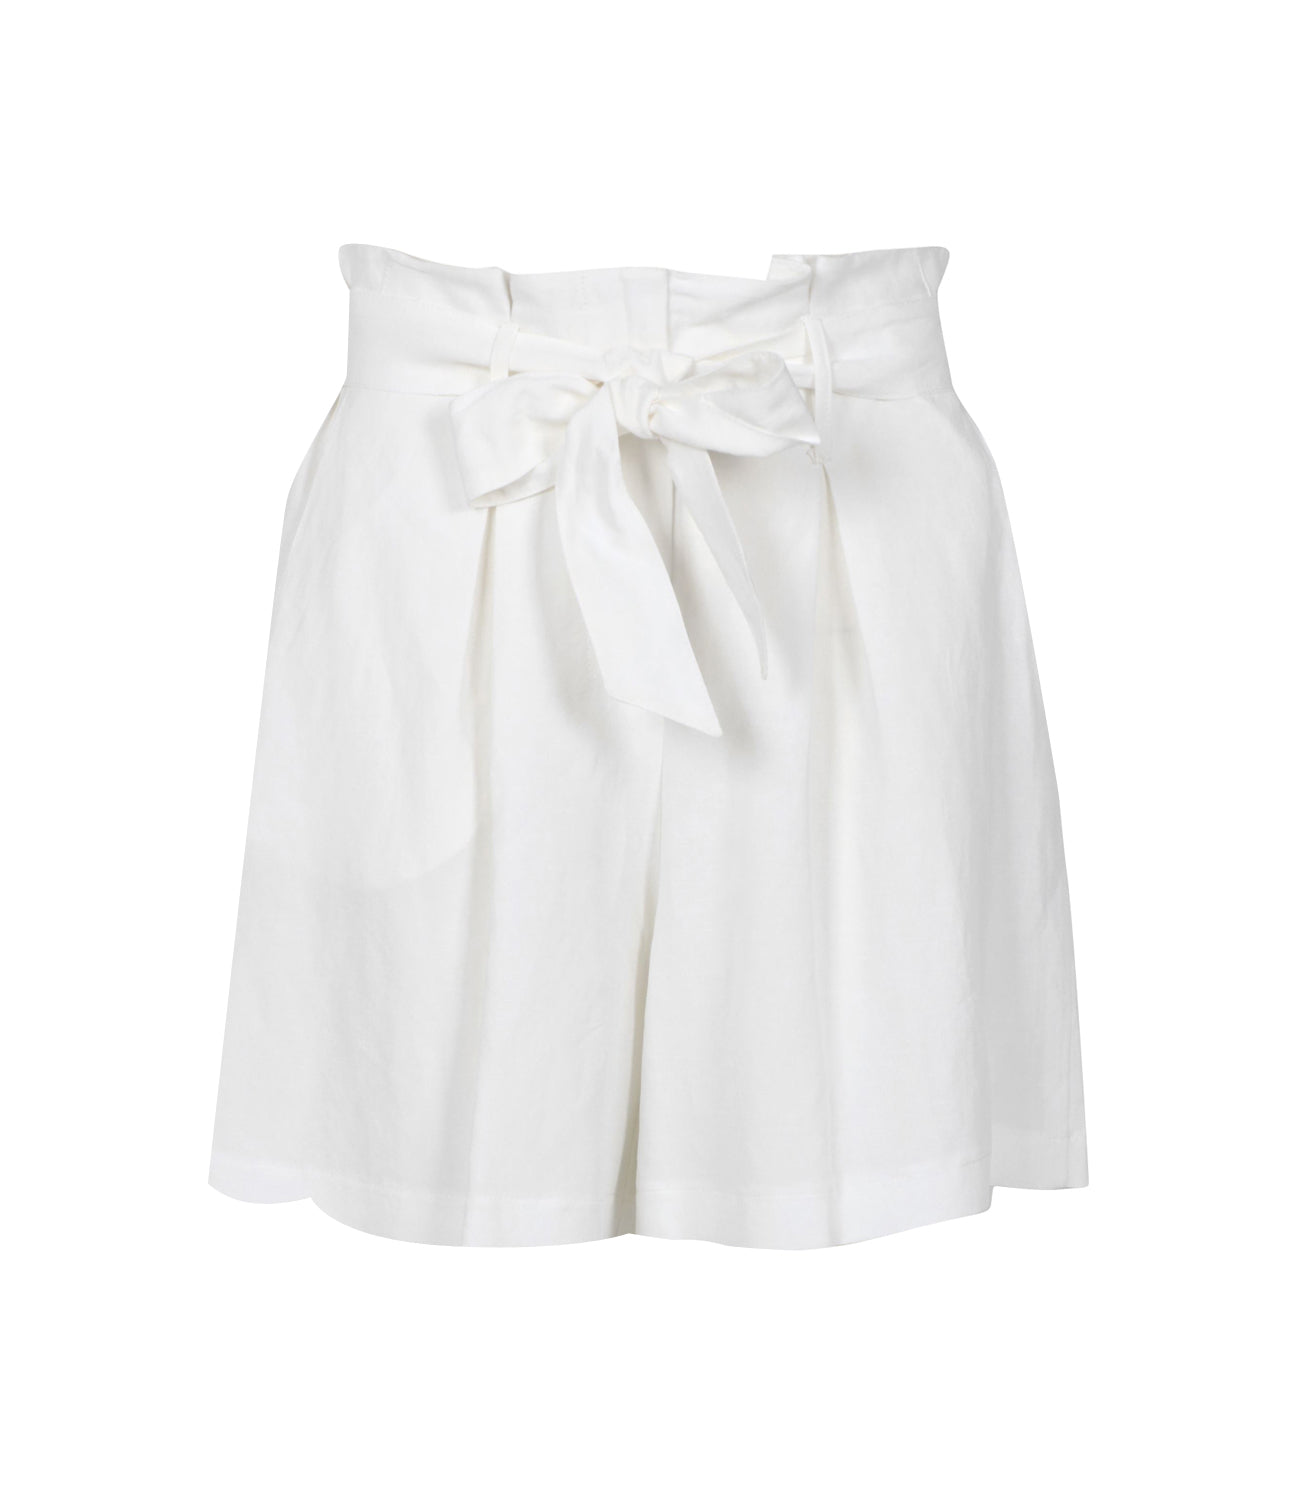 Kaos | Shorts White